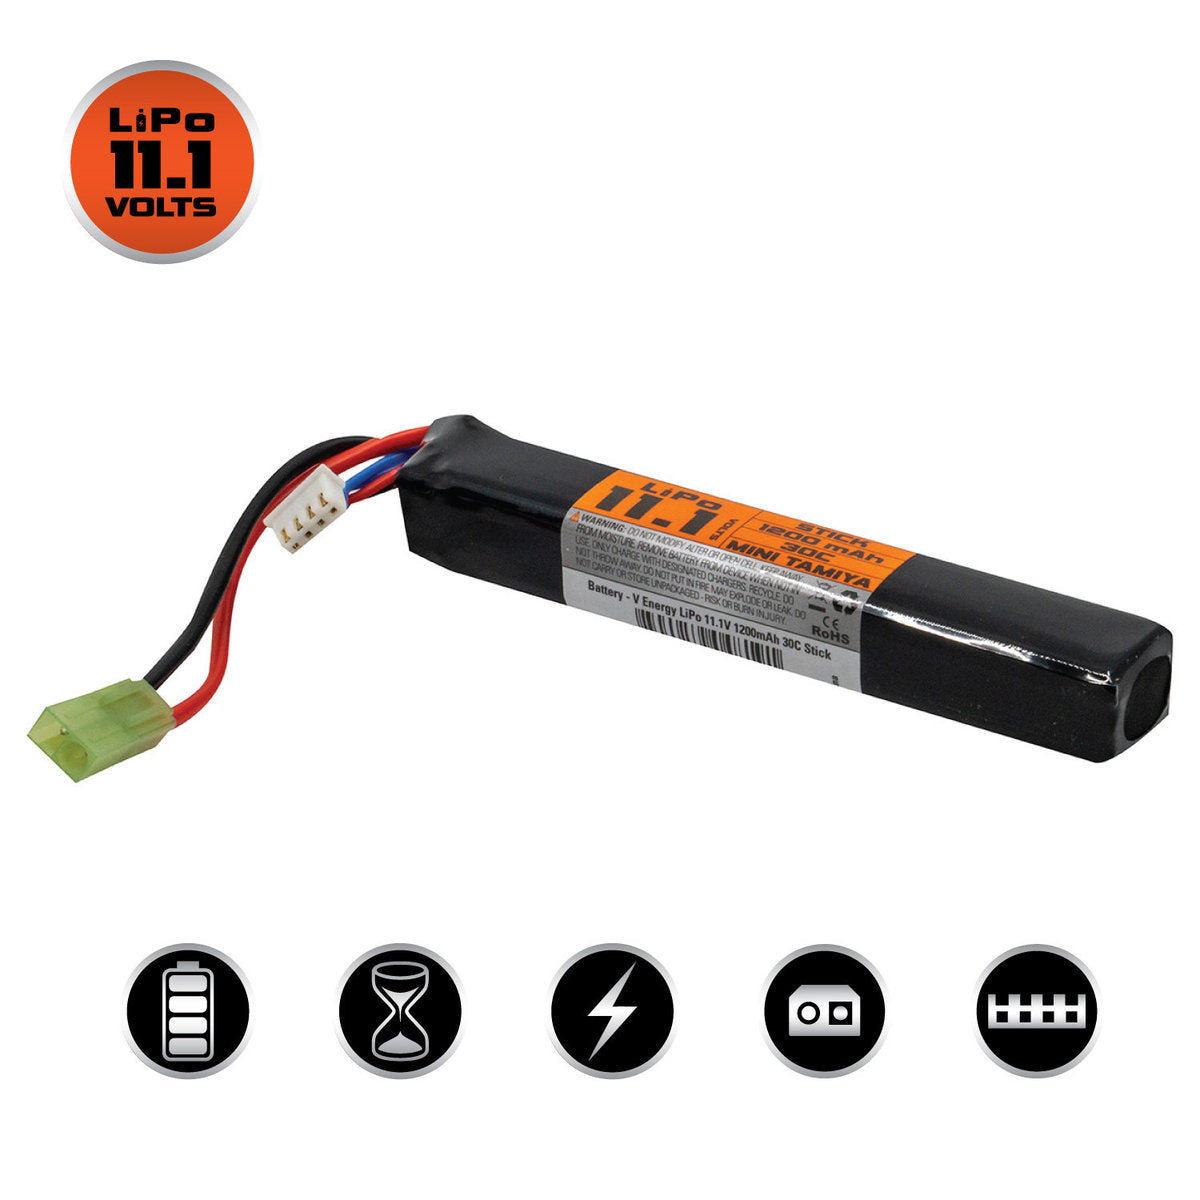 Valken LiPo 11.1v 1200mAh 30C Stick Airsoft Battery (Small Tamiya) - ssairsoft